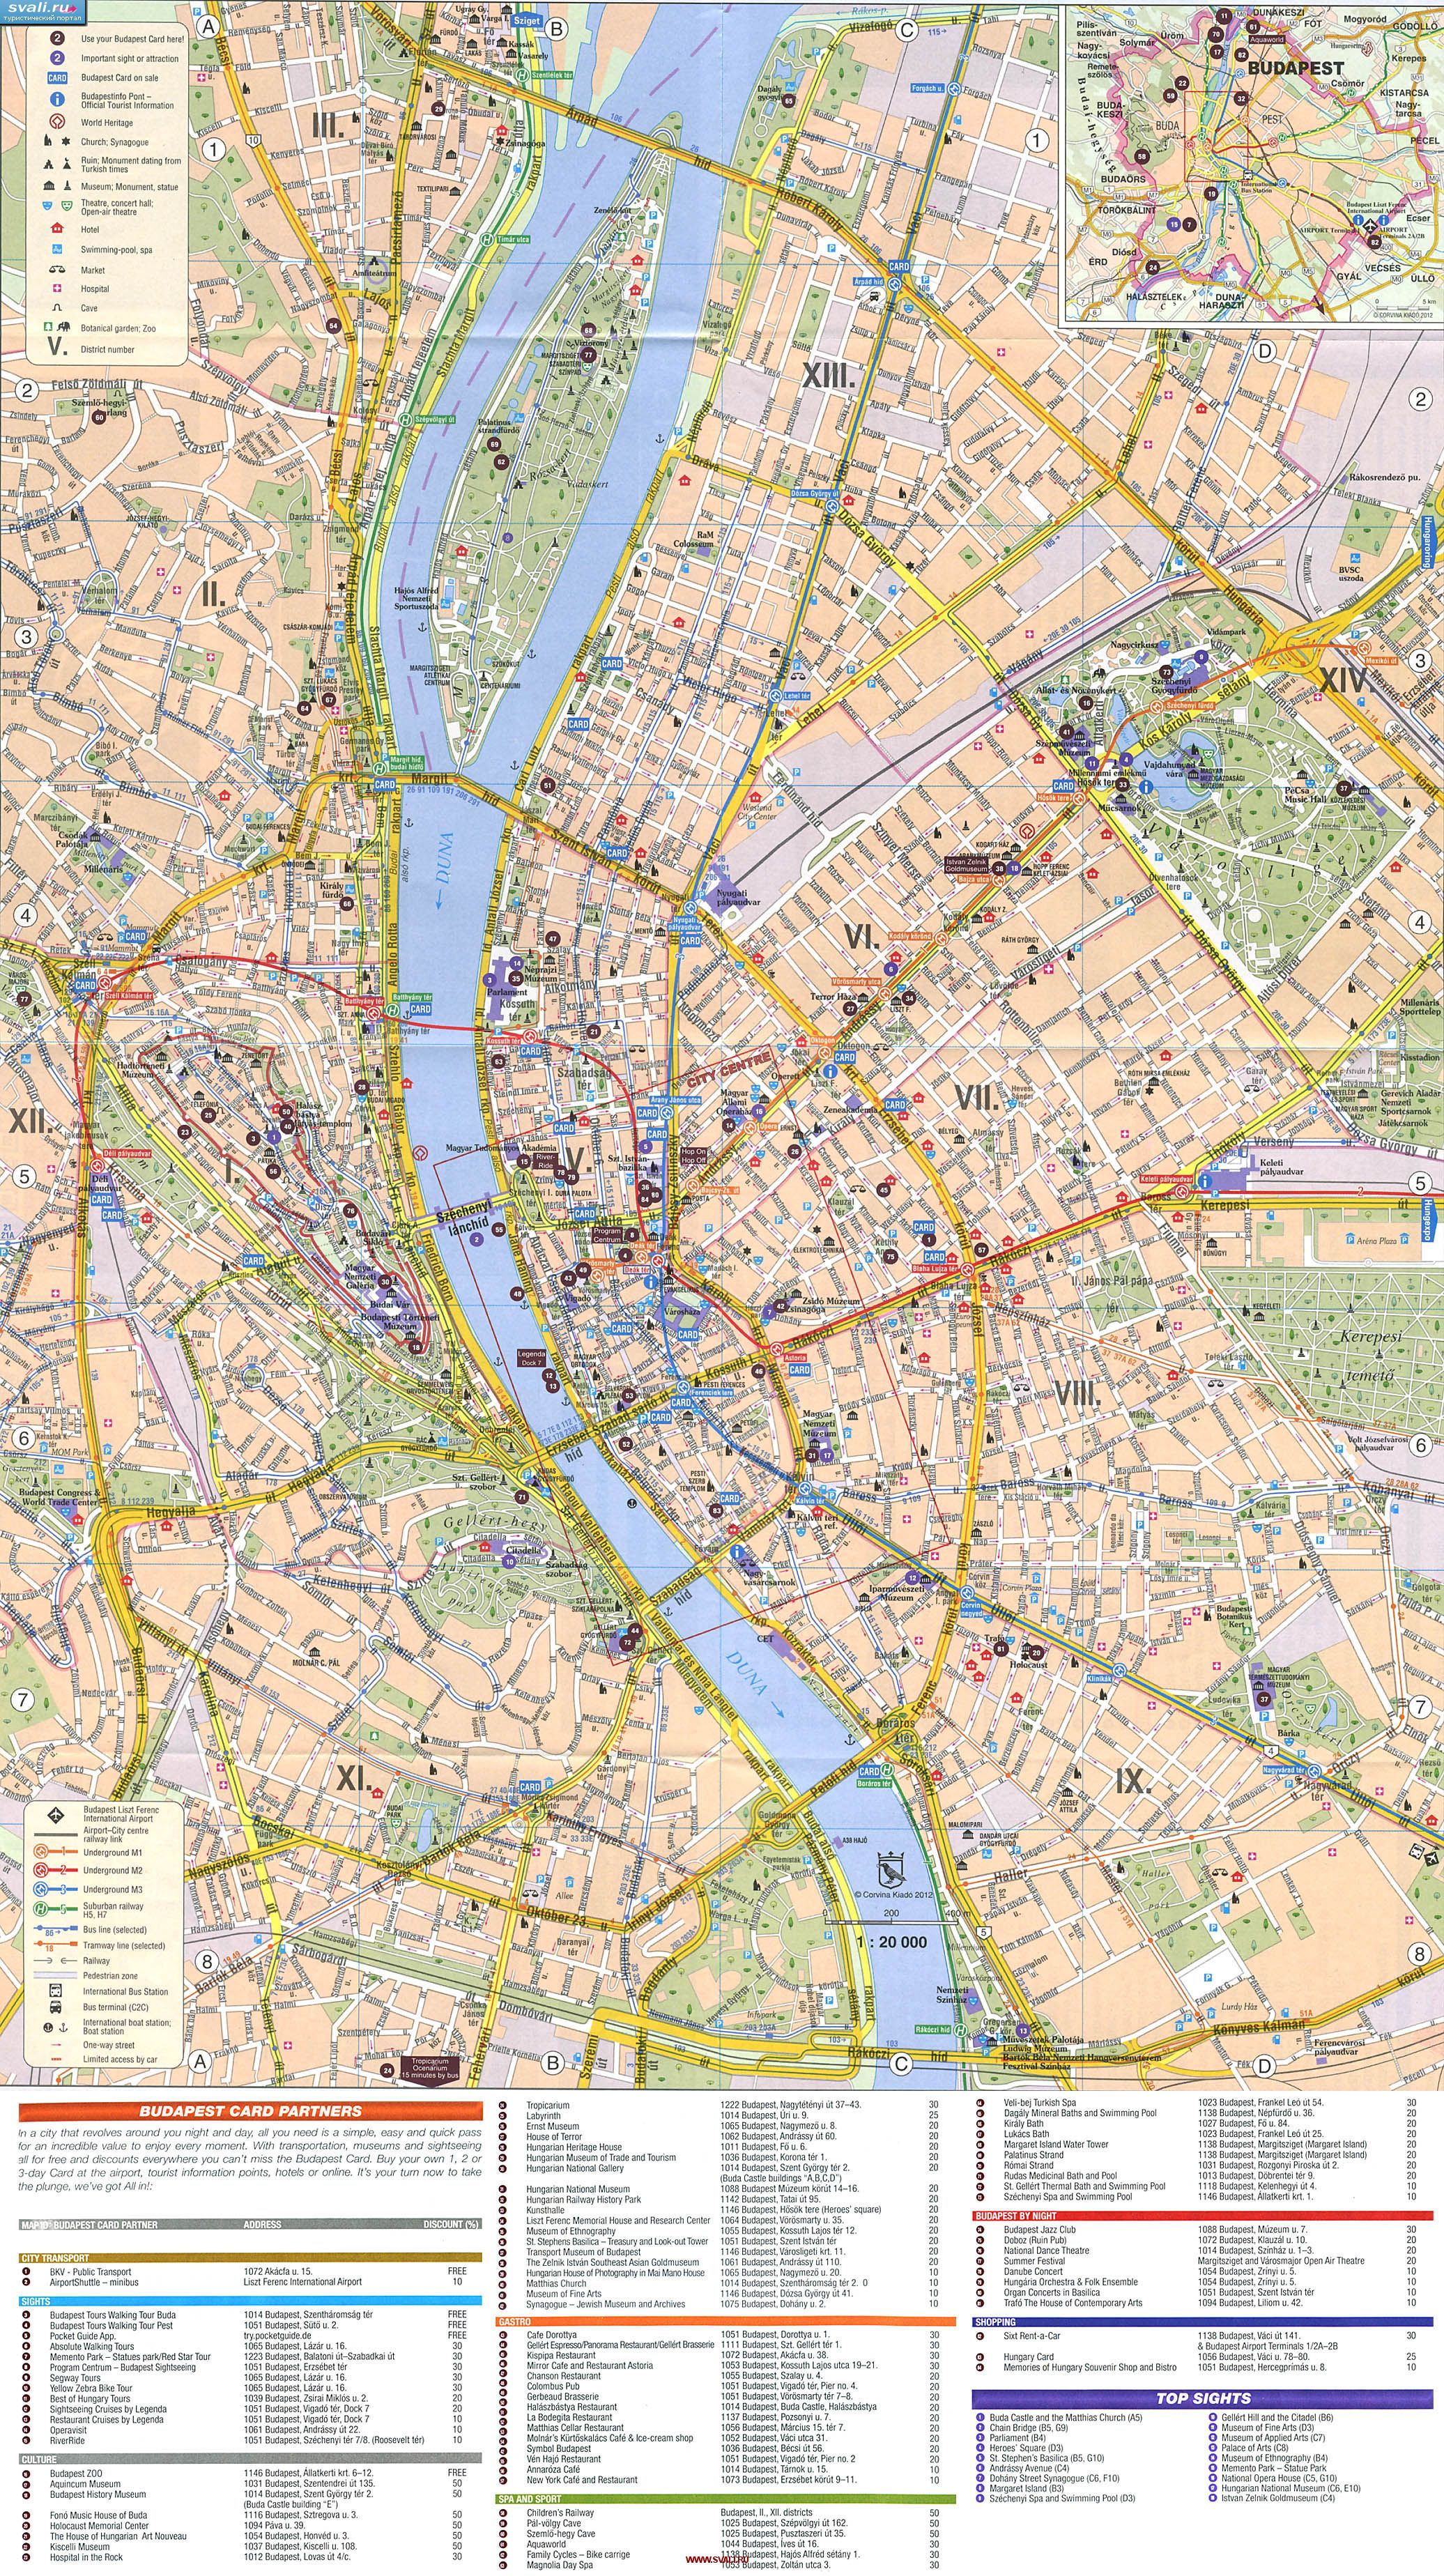 Подробная туристическая карта Будапешта с указанием достопримечательностей, Венгрия (англ.)